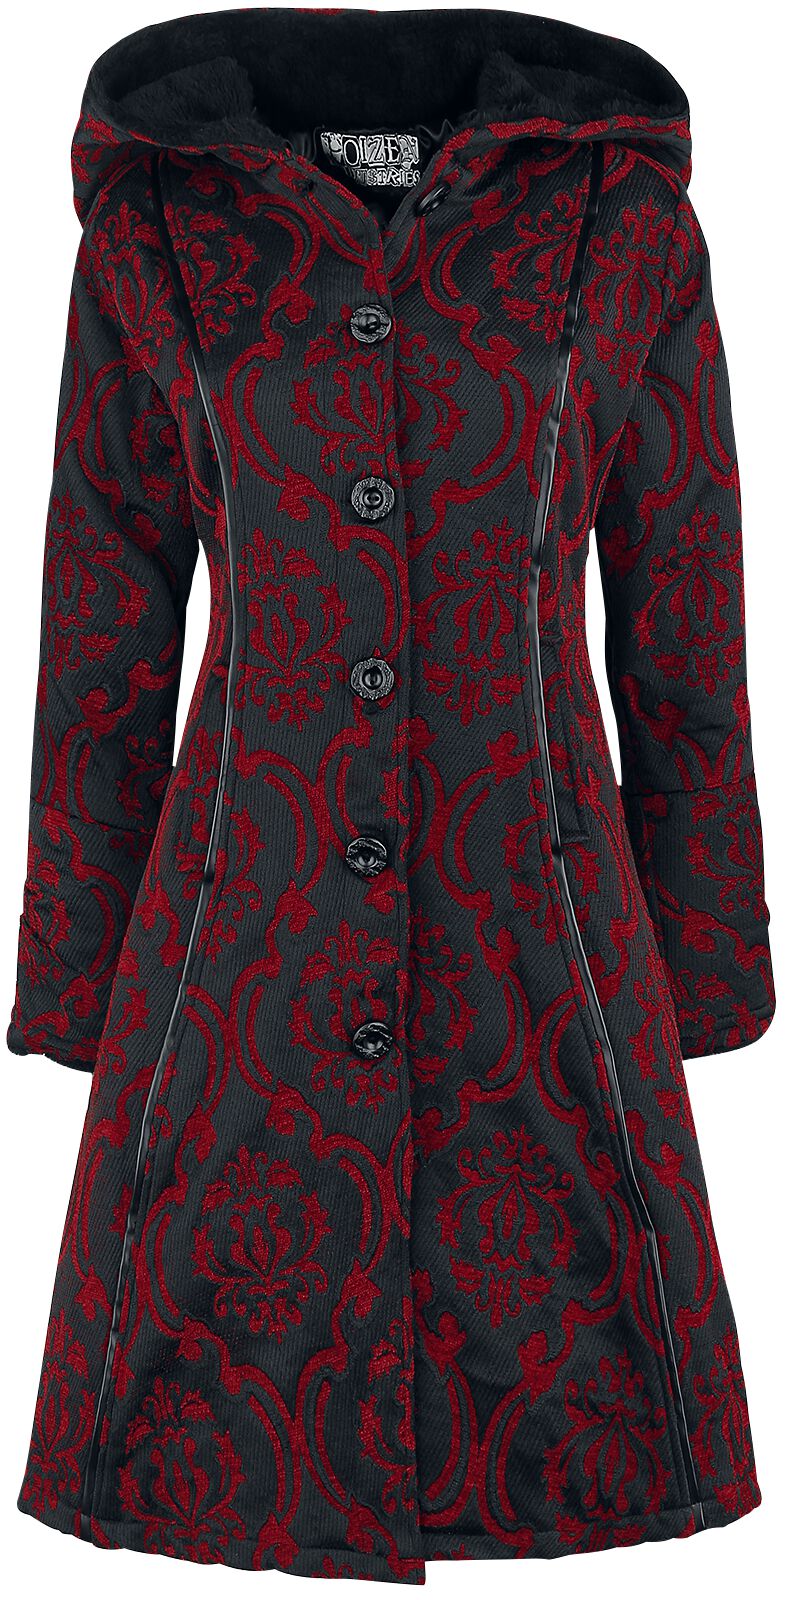 Poizen Industries Mansion Coat Mantel rot schwarz in 3XL